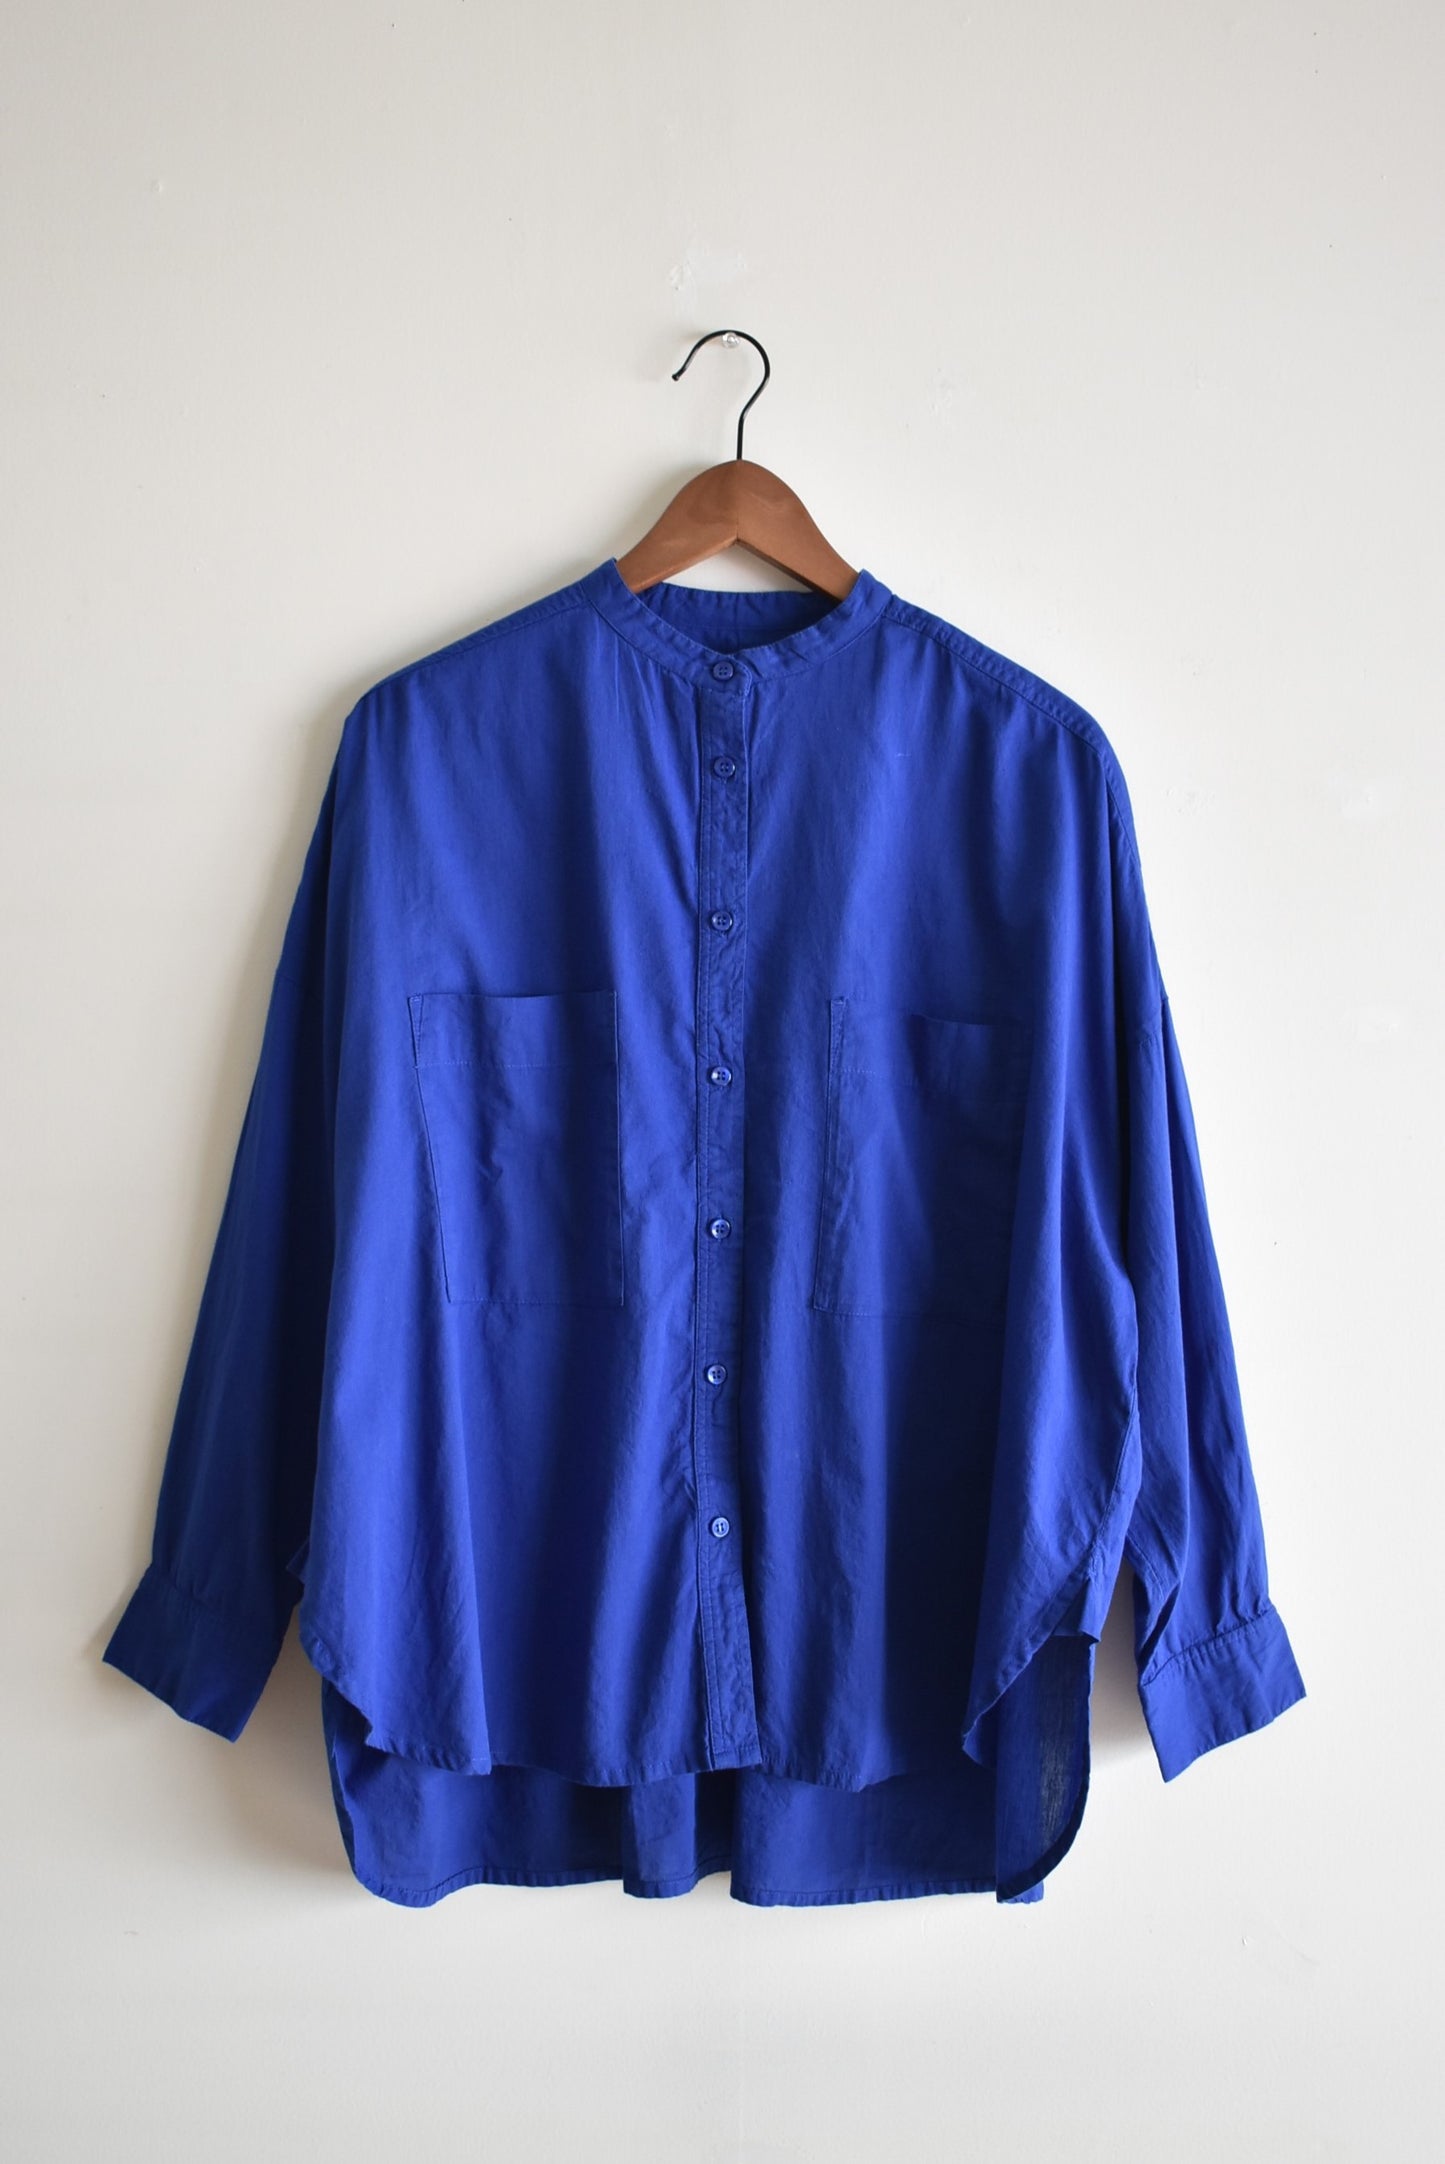 「noia」stand collar over shirt -blue- (women)